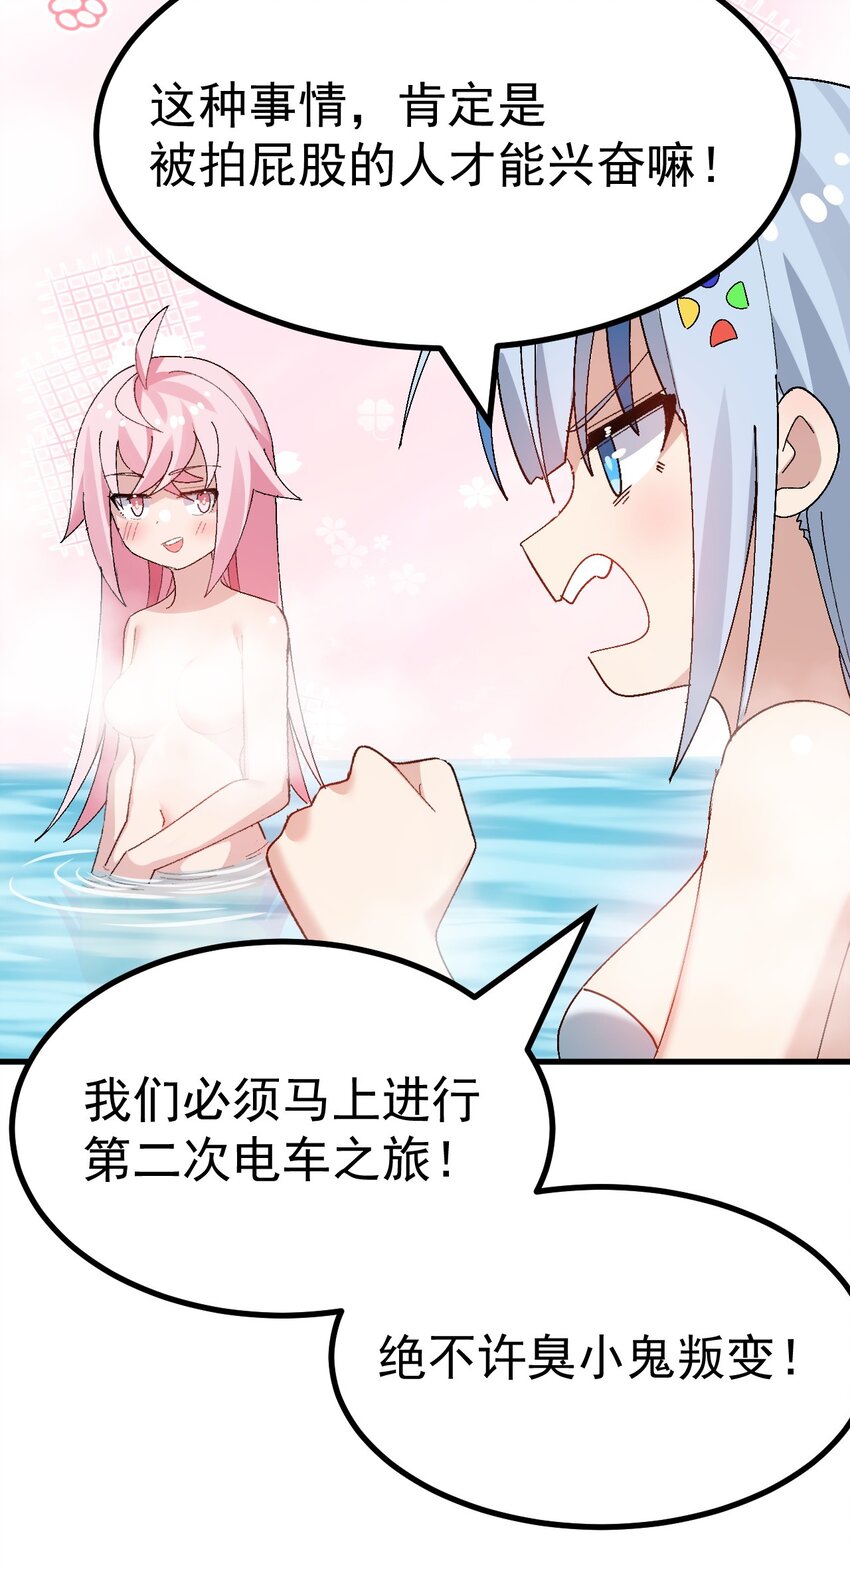 爲了美少女遊戲，女裝也是不可避免的 - 012 澡堂子裡的觸手play？！ - 2